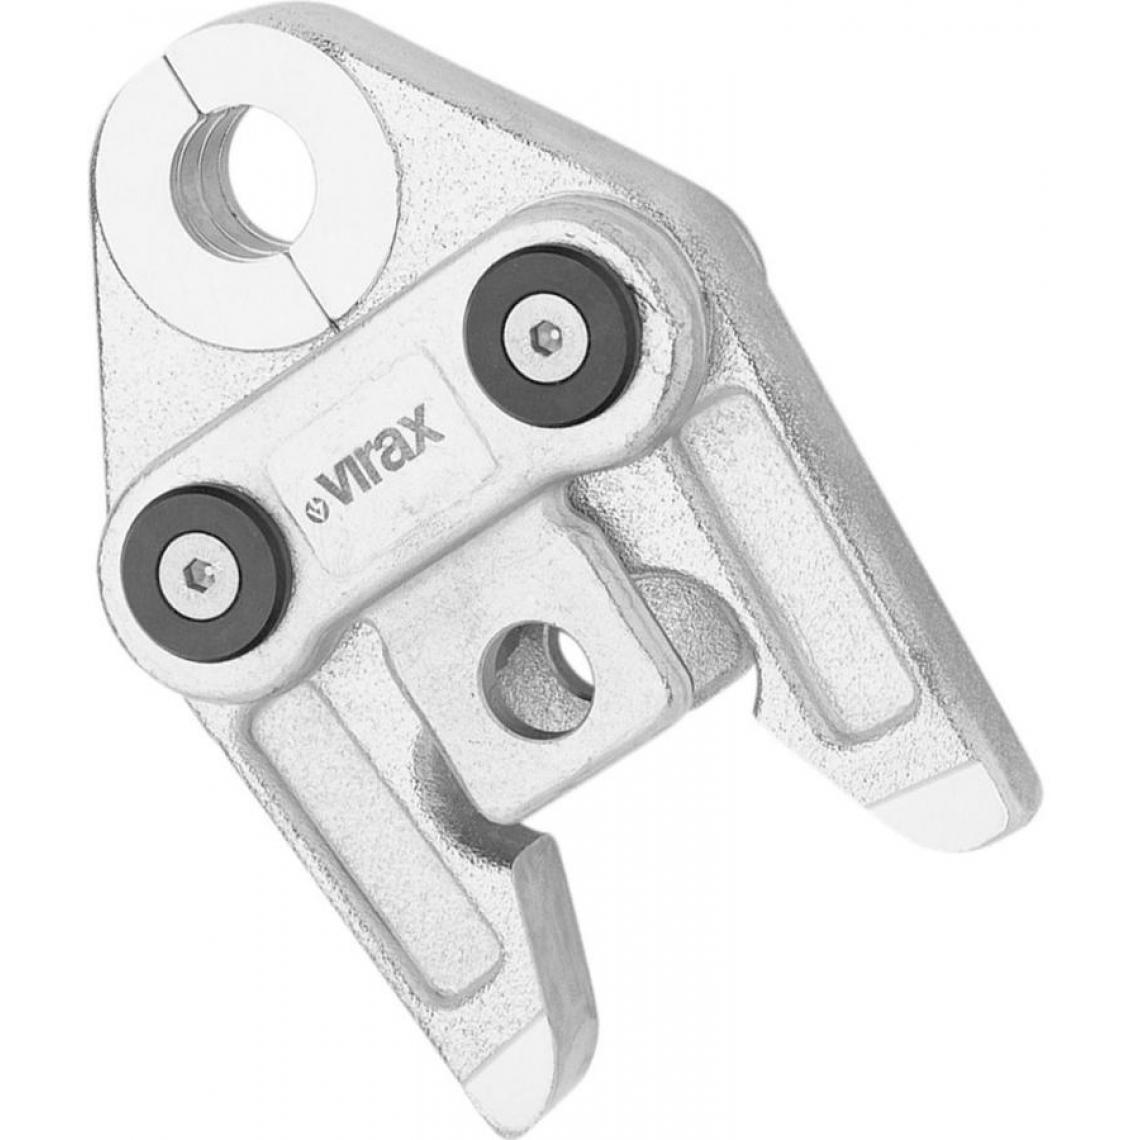 Virax - Pince à sertir TH 26 VIRAX pour P 25 - 253009 - Outils de coupe